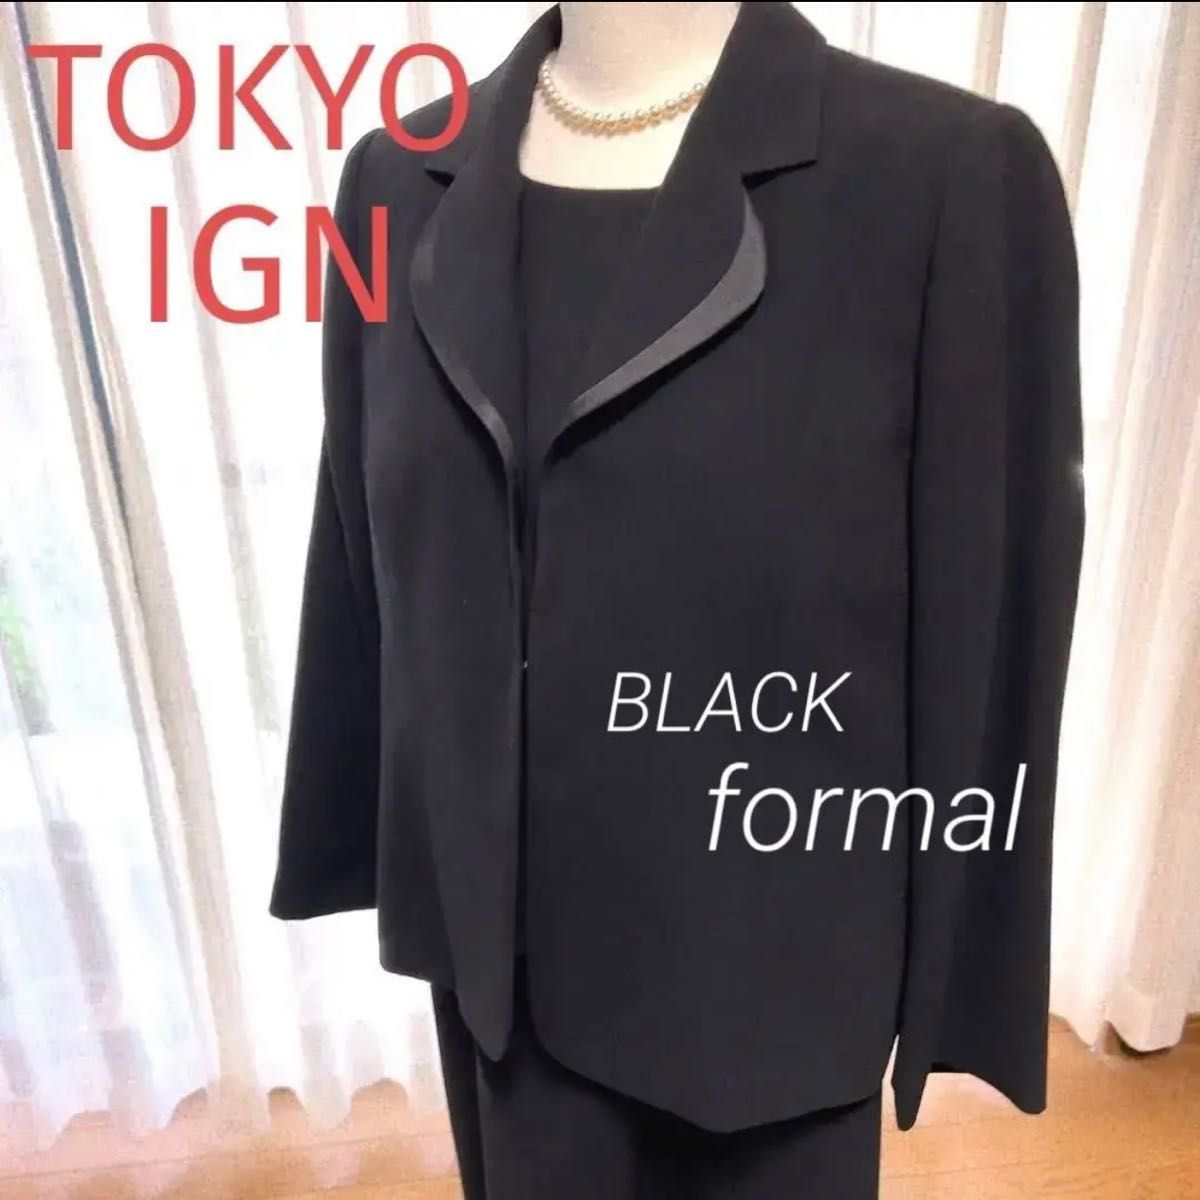 新品】TOKYOIGN 東京イギン 21号 ブラックフォーマル 大きいサイズ